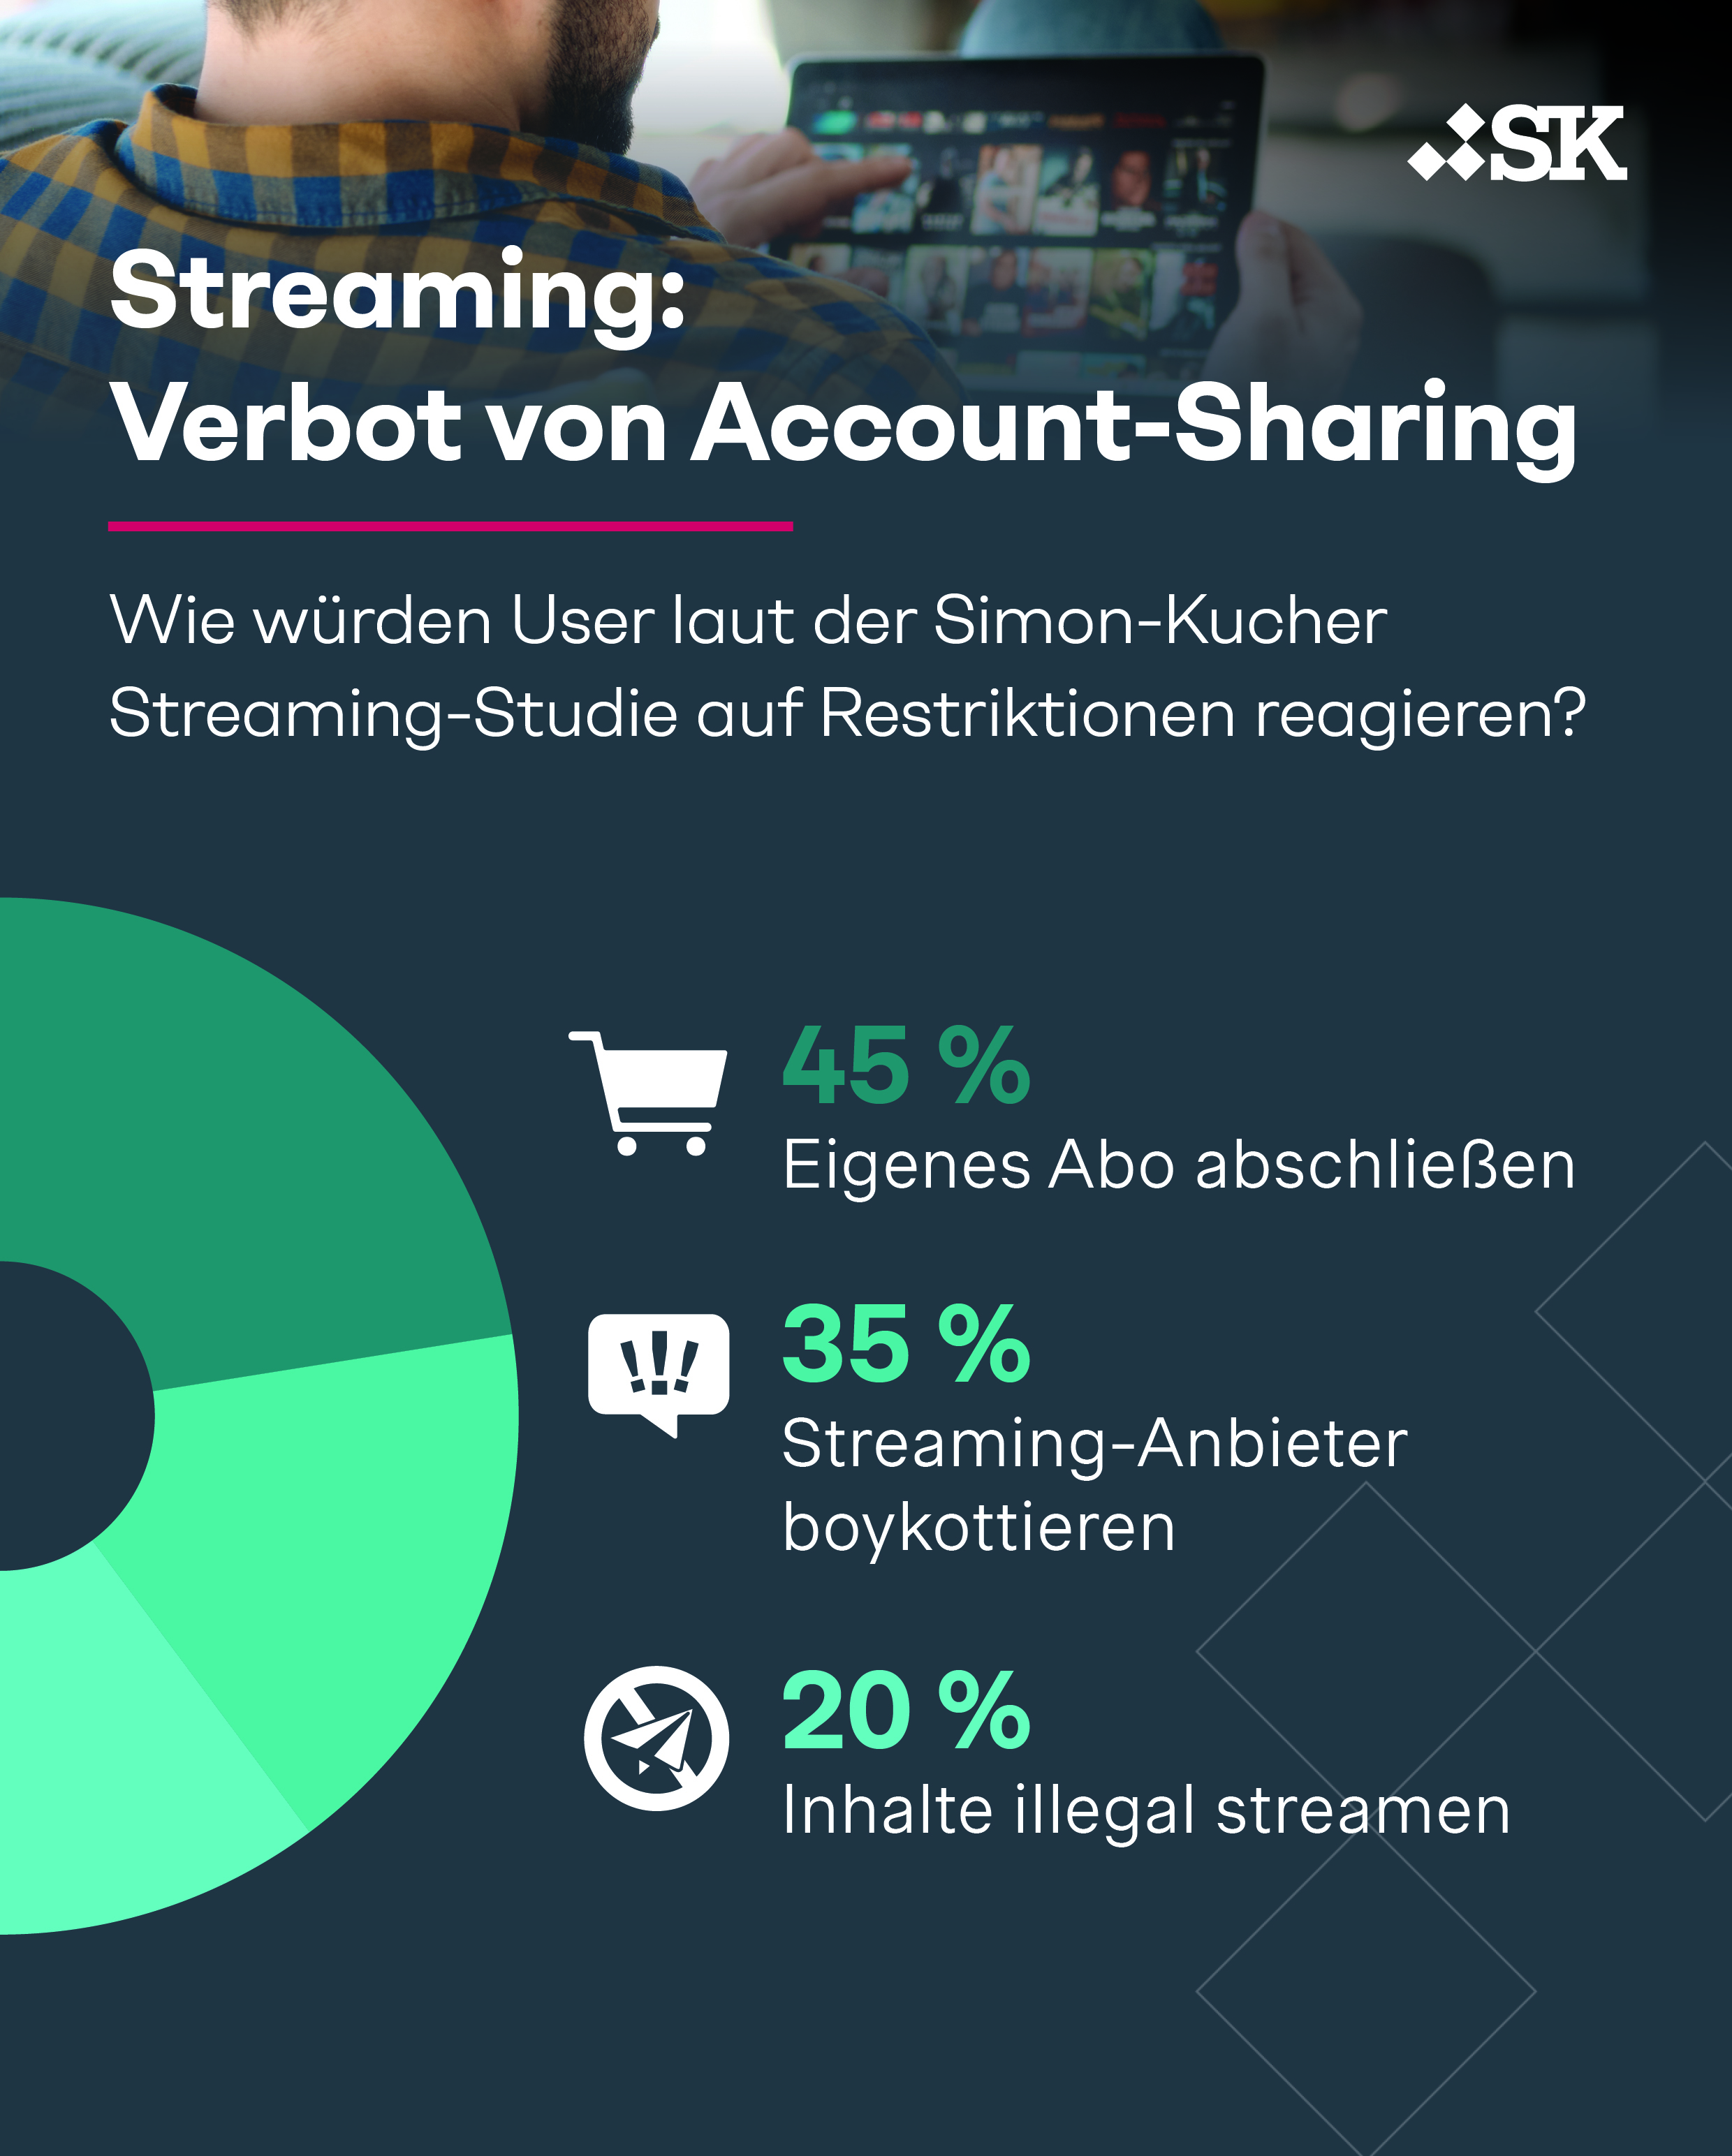 User-Verhalten bei Account-Sharing-Restriktionen gemäß der Simon-Kucher Streaming-Studie